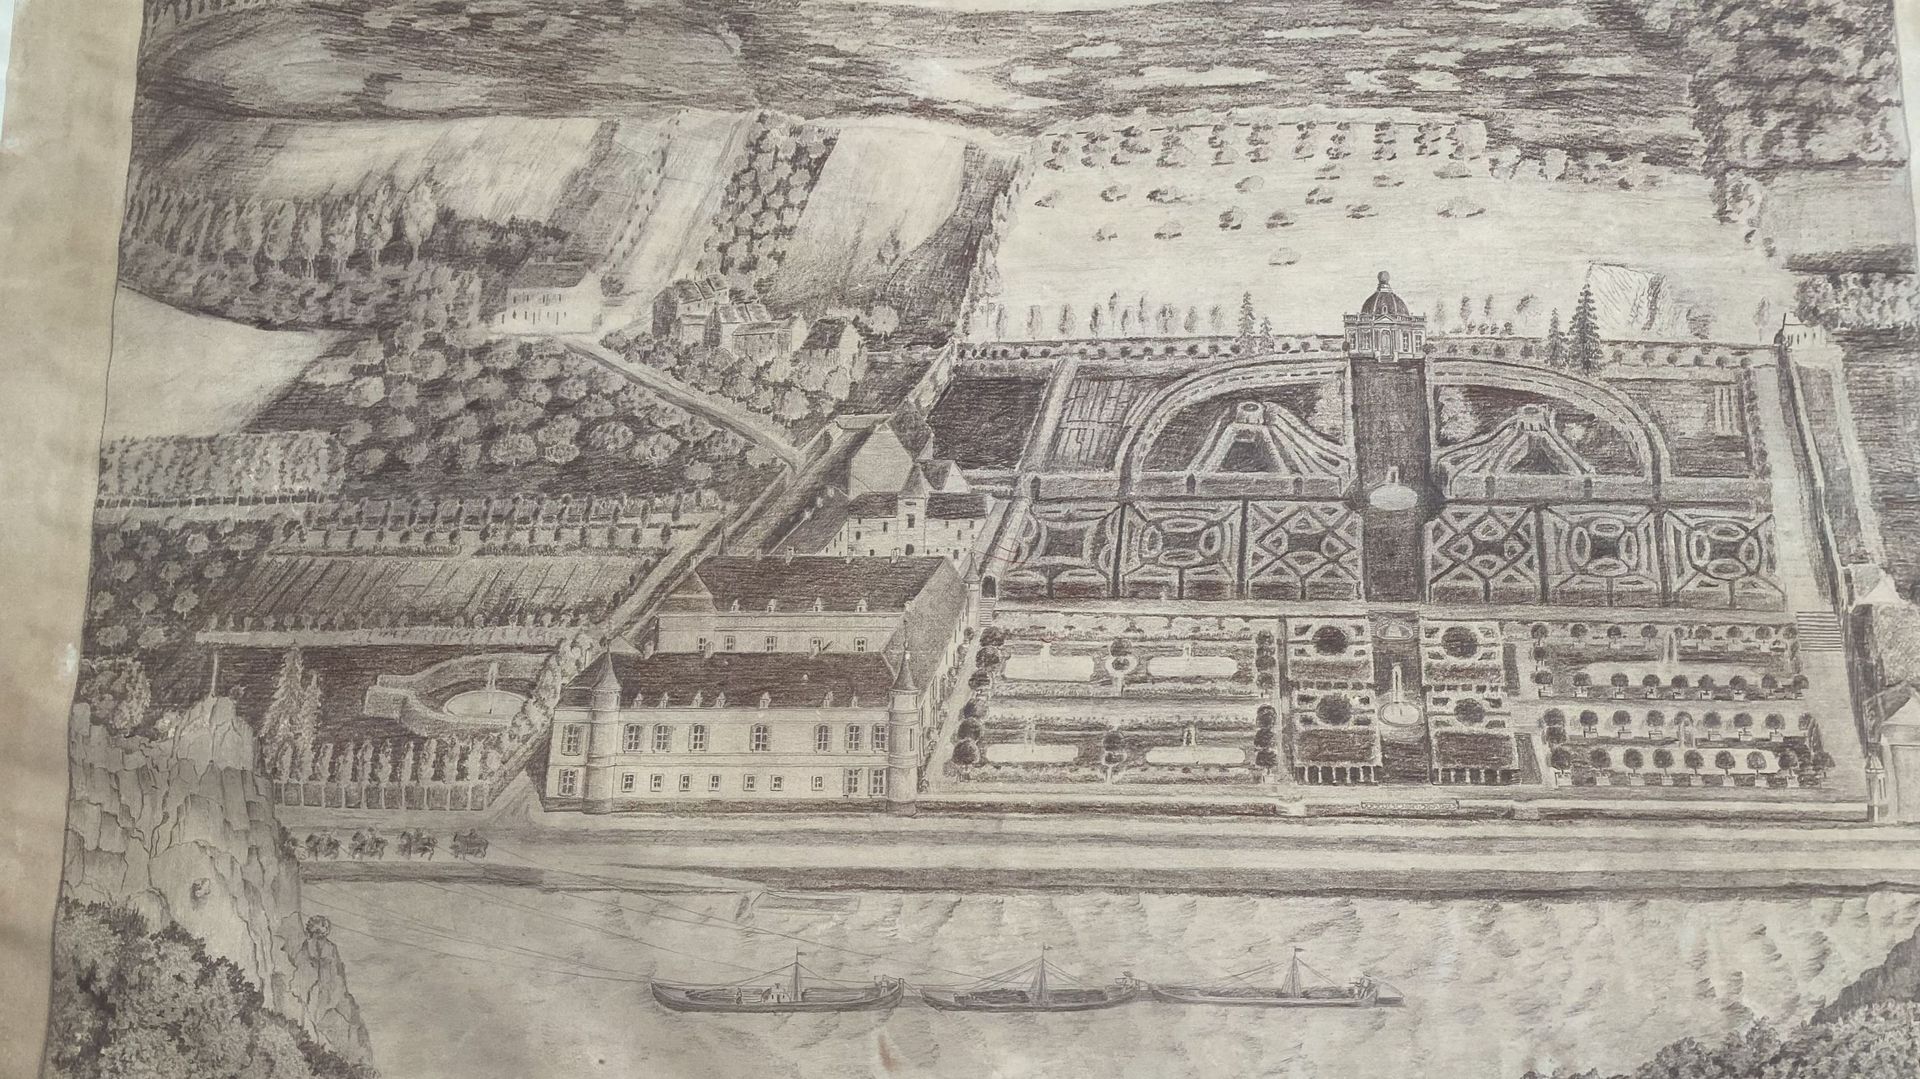 Oeuvre exposée dans le pré-accueil du château de Freÿr, où l’on voit les orangers disposés autour des deux étangs, à droite